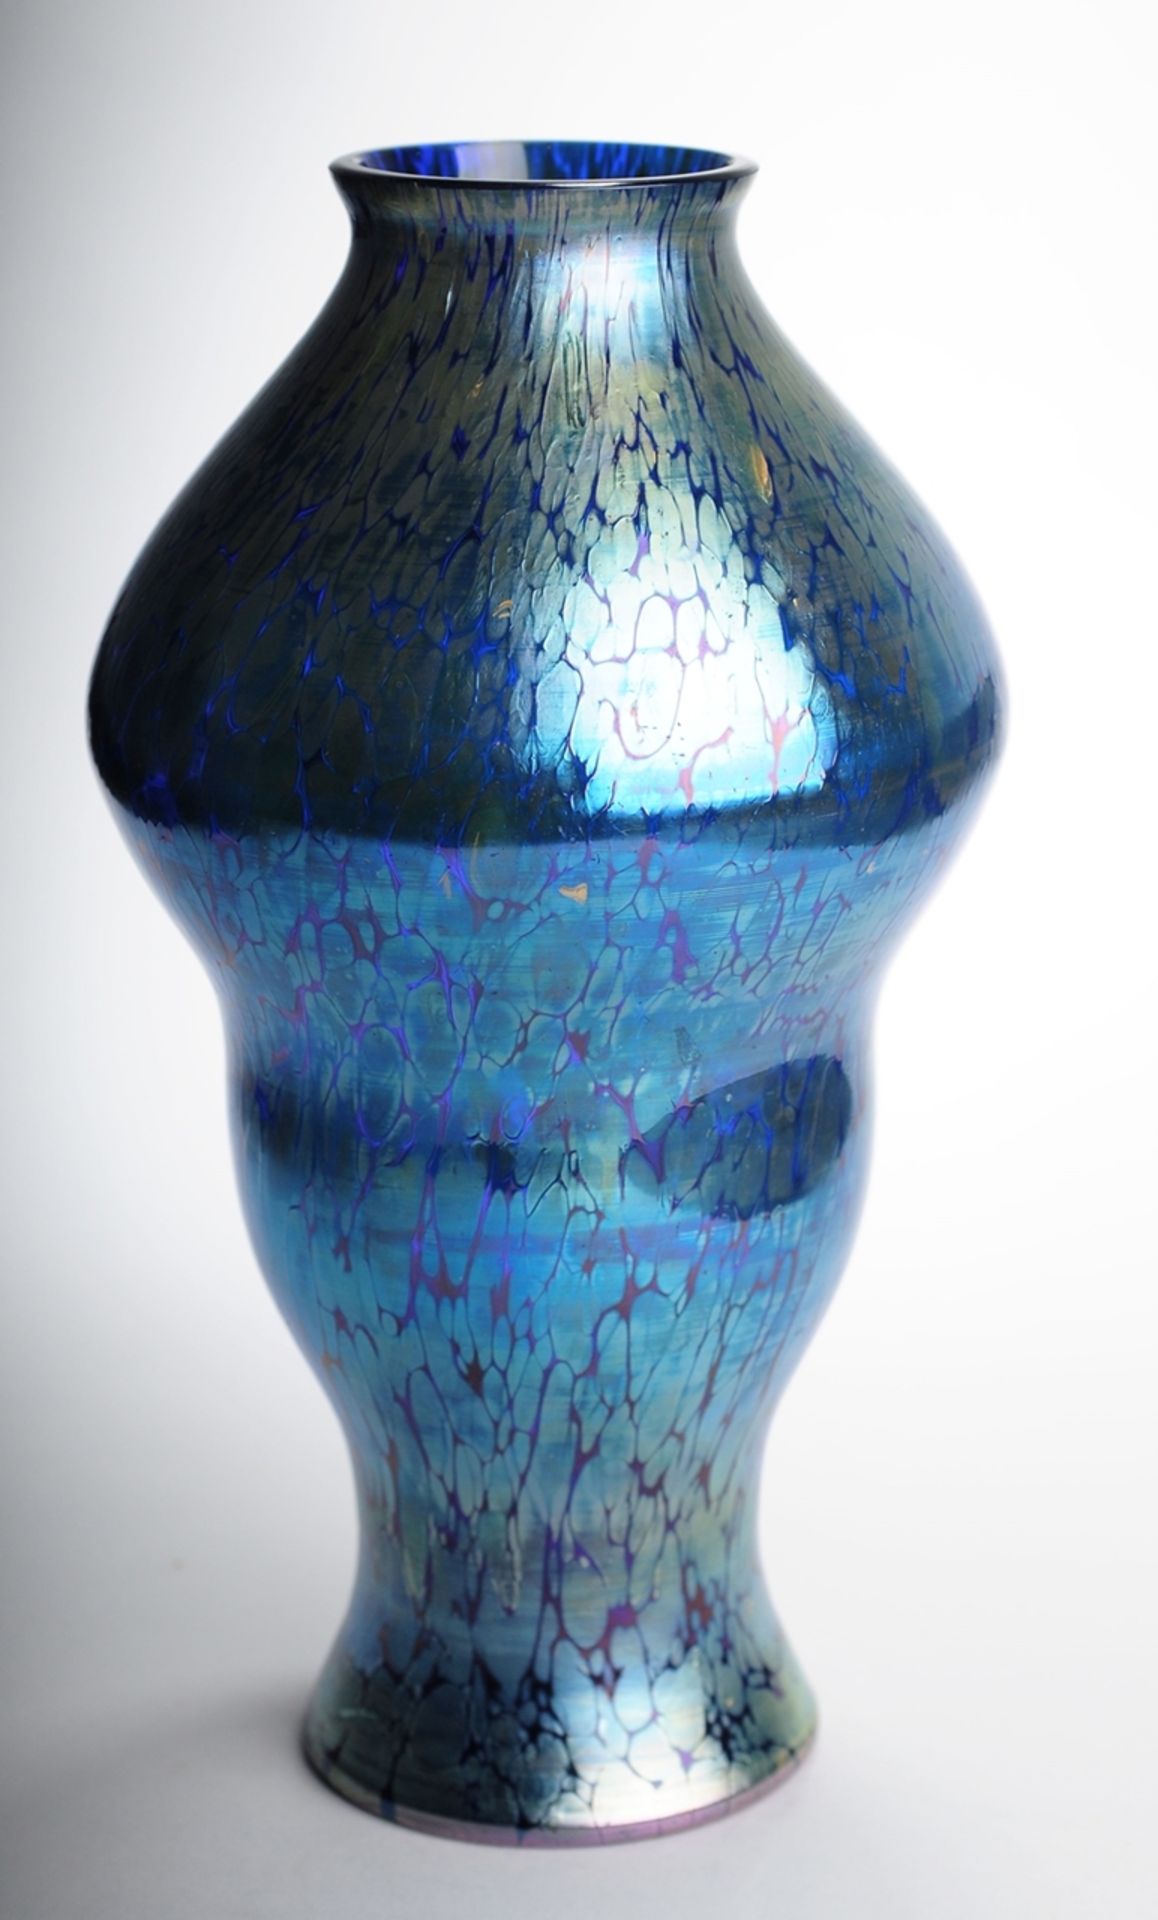 Jugendstil-VaseKobaltblaues Glas, silbergelbe Kröseleinschmelzungen, reduziert u. irisiert.